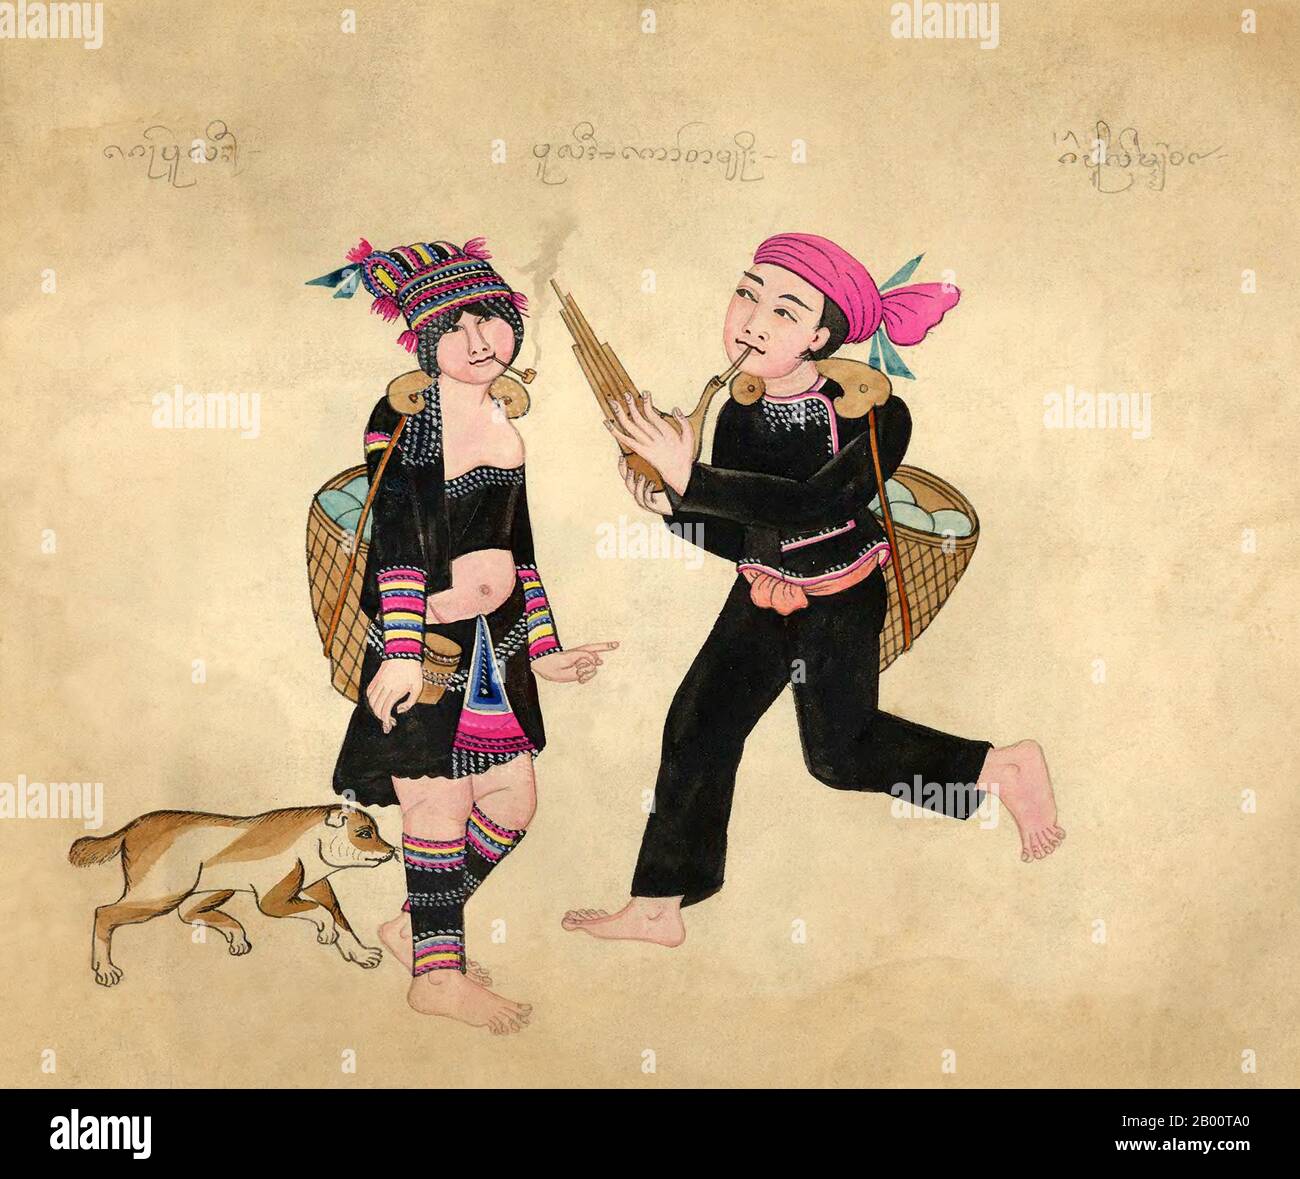 Birmanie/Myanmar: Une femme d'Akha avec pipe et chien est sérénade par un homme d'Akha avec une flûte. Aquarelle de la fin du XIXe siècle dessinée à la main par un artiste birman inconnu. Le nom du groupe ethnique en vedette apparaît en haut de l'image dans les textes Shan (à gauche), birman (au centre) et Khun (à droite). Le script Khun était autrefois utilisé à Kengtung/Kyaingtong dans l'est de l'État de Shan et dans LAN Na ou Lanna, dans le nord de la Thaïlande. Banque D'Images